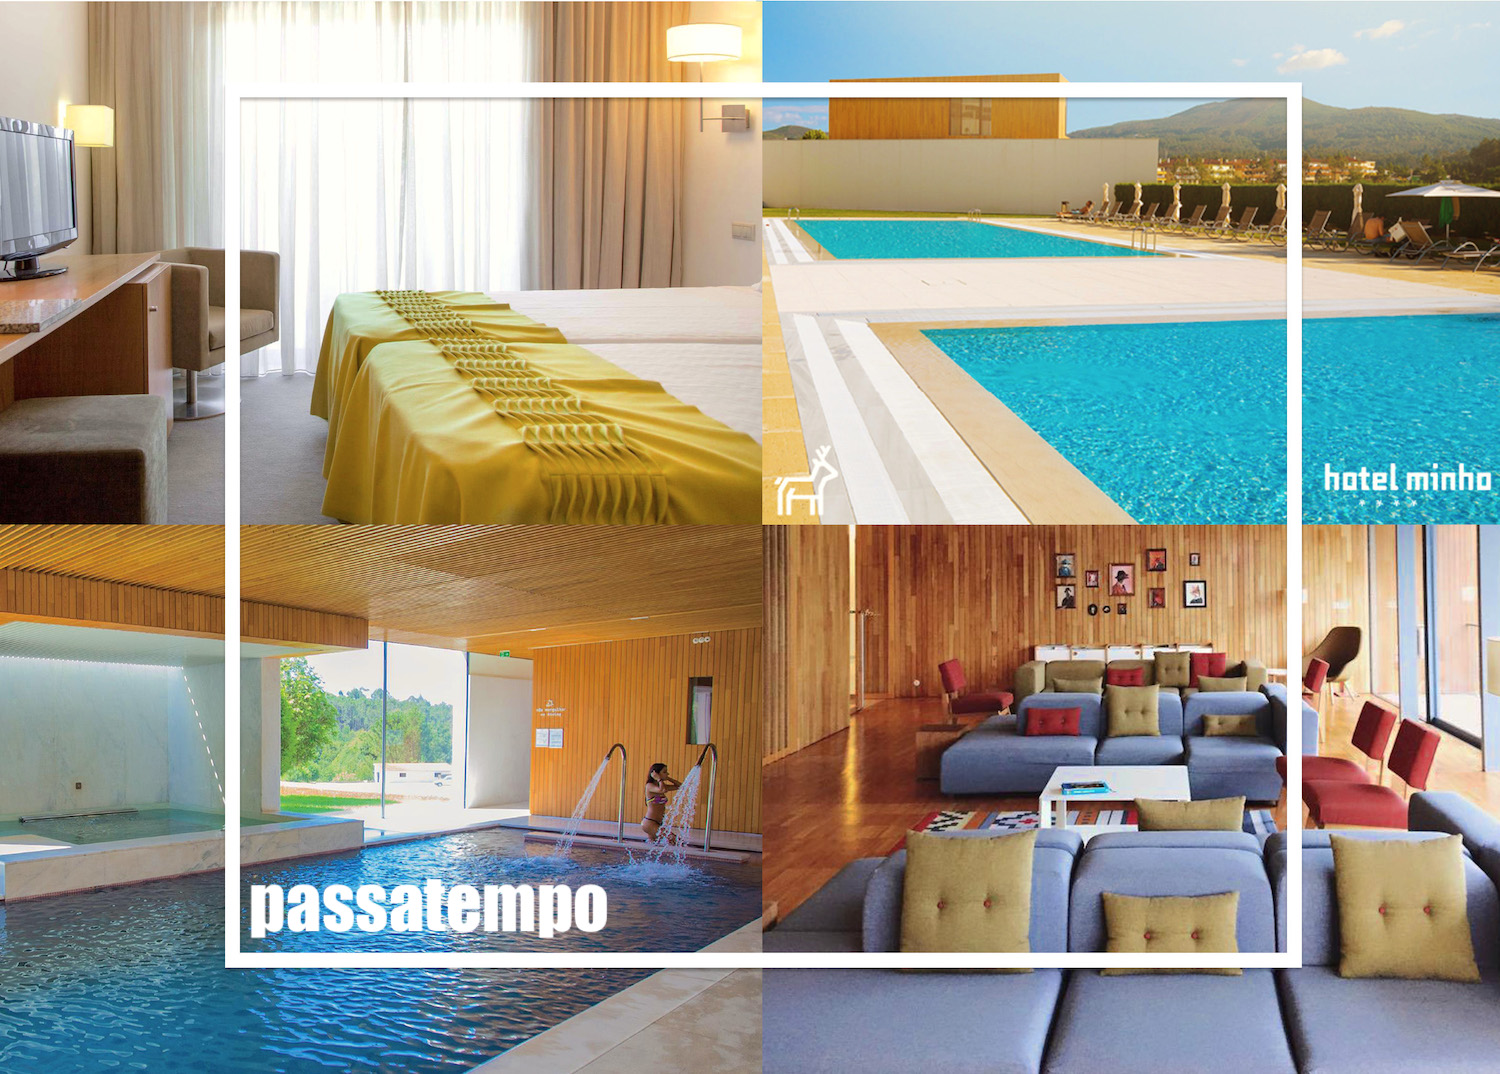 PASSATEMPO – VOUCHER Hotel Minho****, Turismo Alto Minho